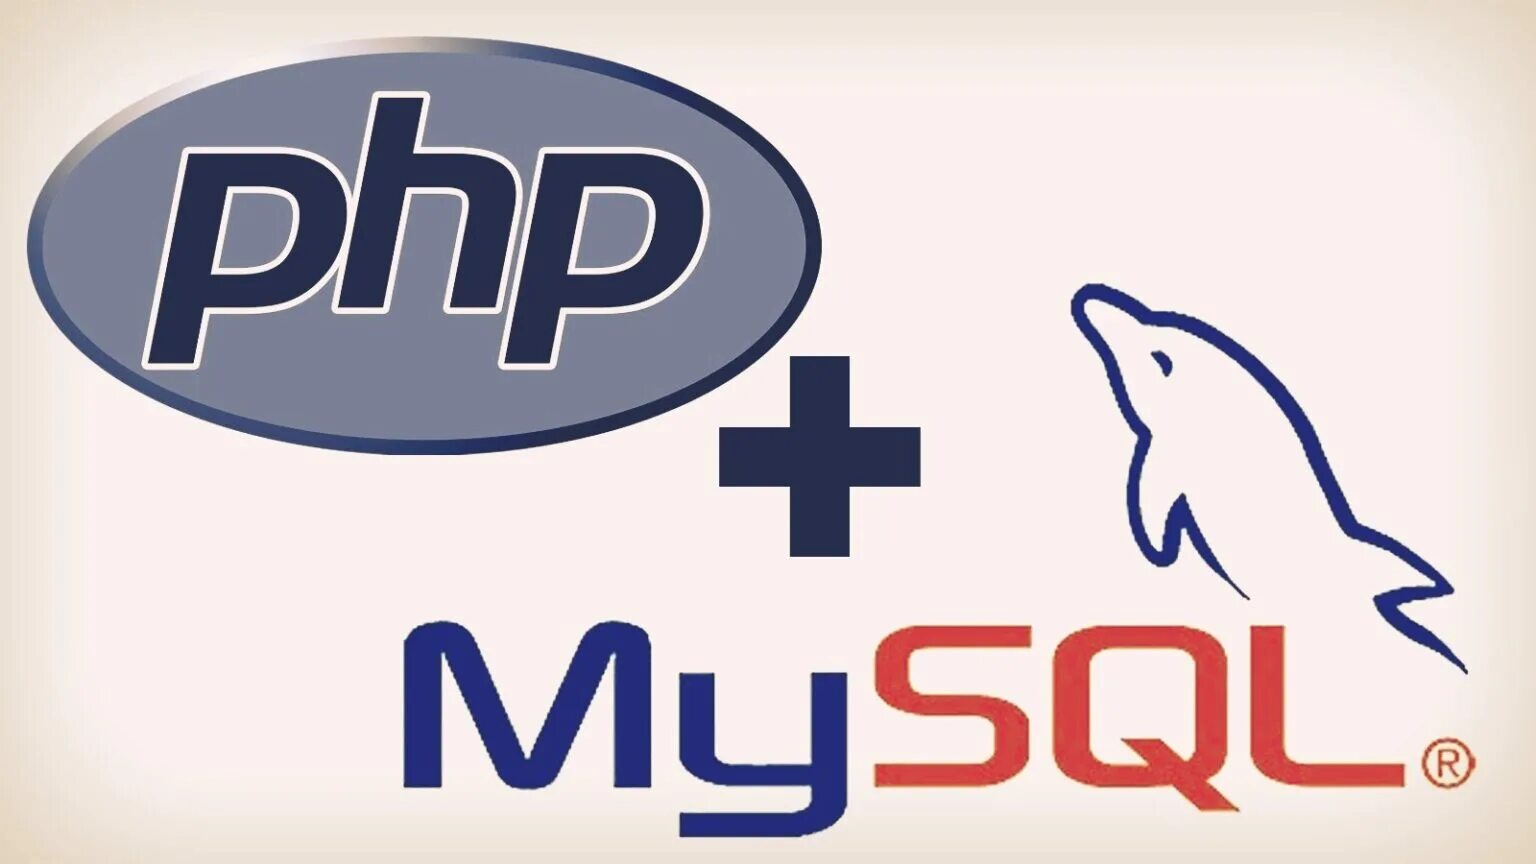 Php. Php логотип. Php язык программирования. Php картинка. Php clear